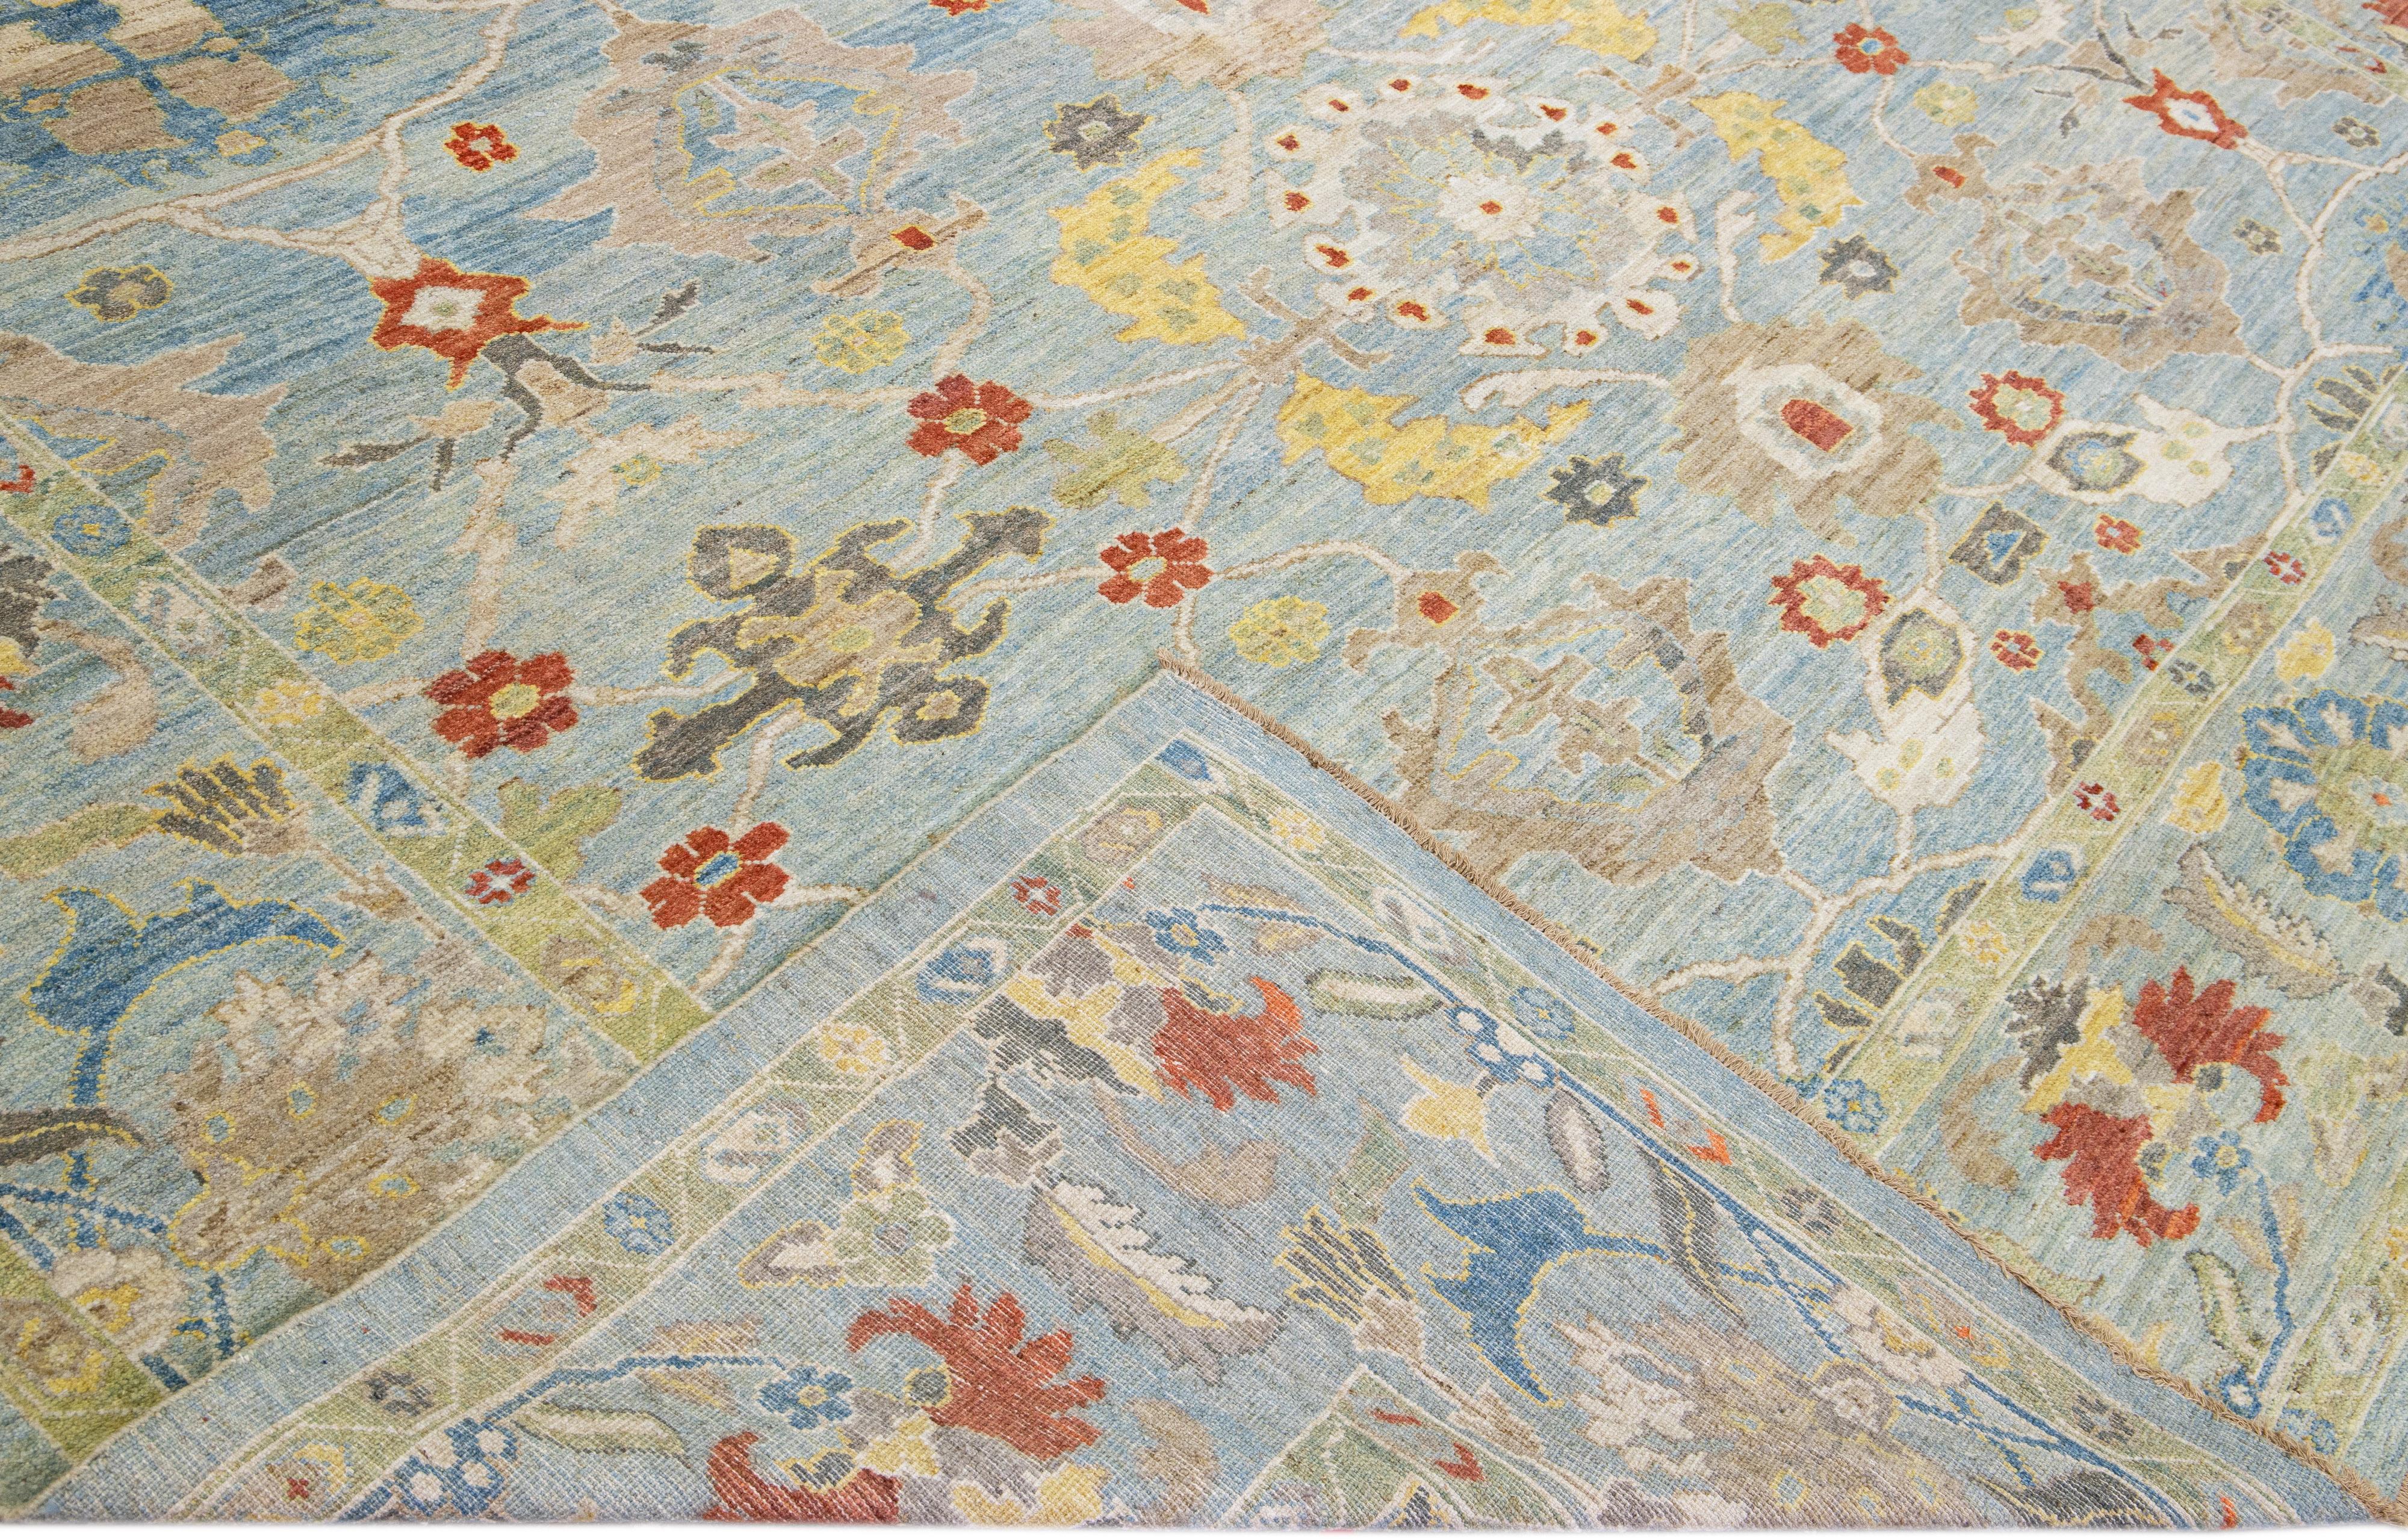 Schöner moderner Sultanabad-Teppich aus handgeknüpfter Wolle mit hellblauem Feld. Dieser Sultanabad-Teppich hat mehrfarbige Akzente in einem prächtigen klassischen Blumenmuster.

Dieser Teppich misst: 12'2